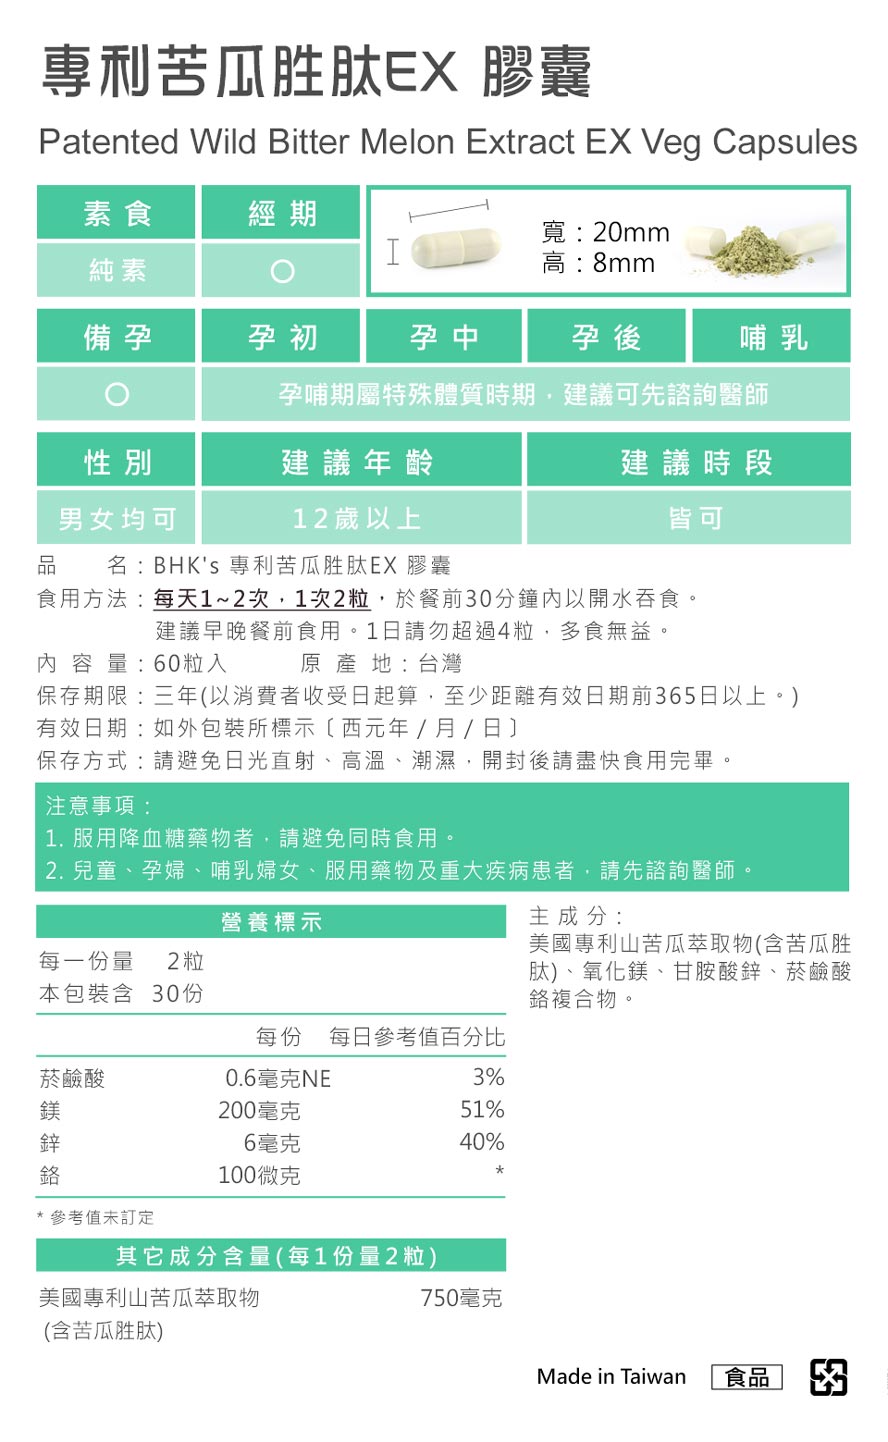 BHK's专利苦瓜胜肽，台湾制造、MIT台湾品牌，通过安全检验合格、安全无虑。